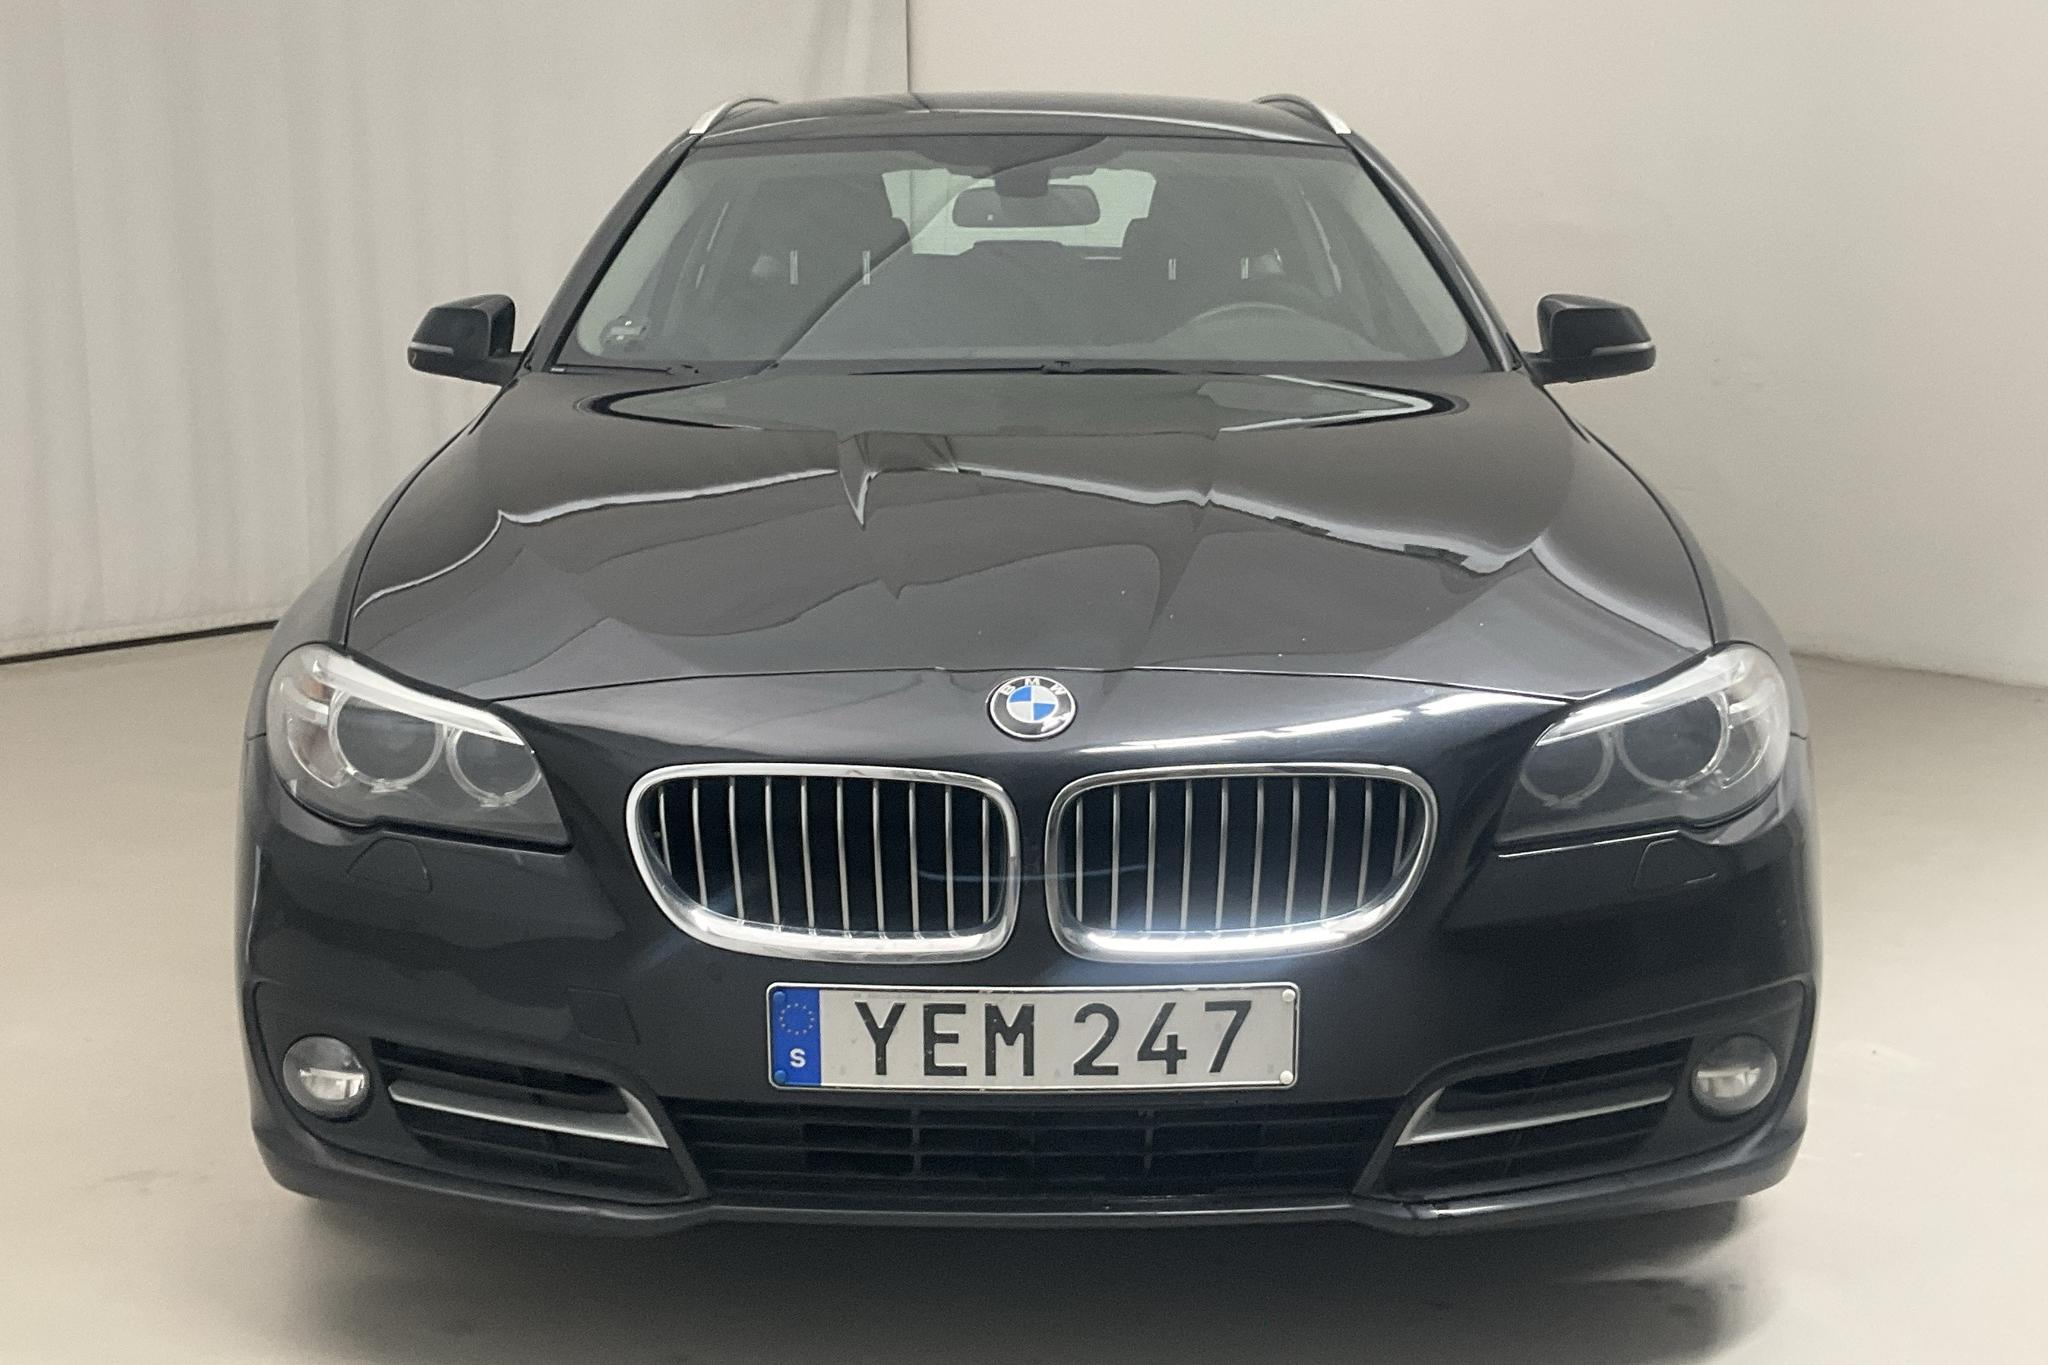 BMW 520d xDrive Touring, F11 (190hk) - 159 080 km - Automatic - black - 2016